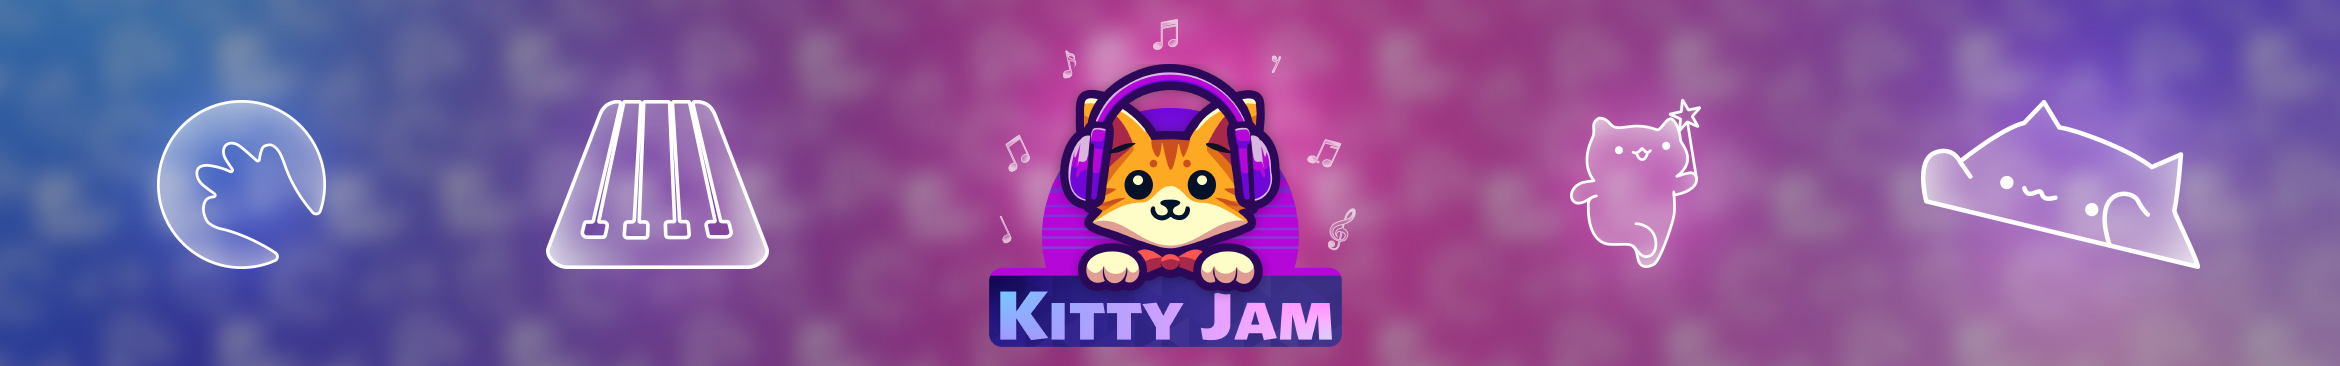 Kitty Jam